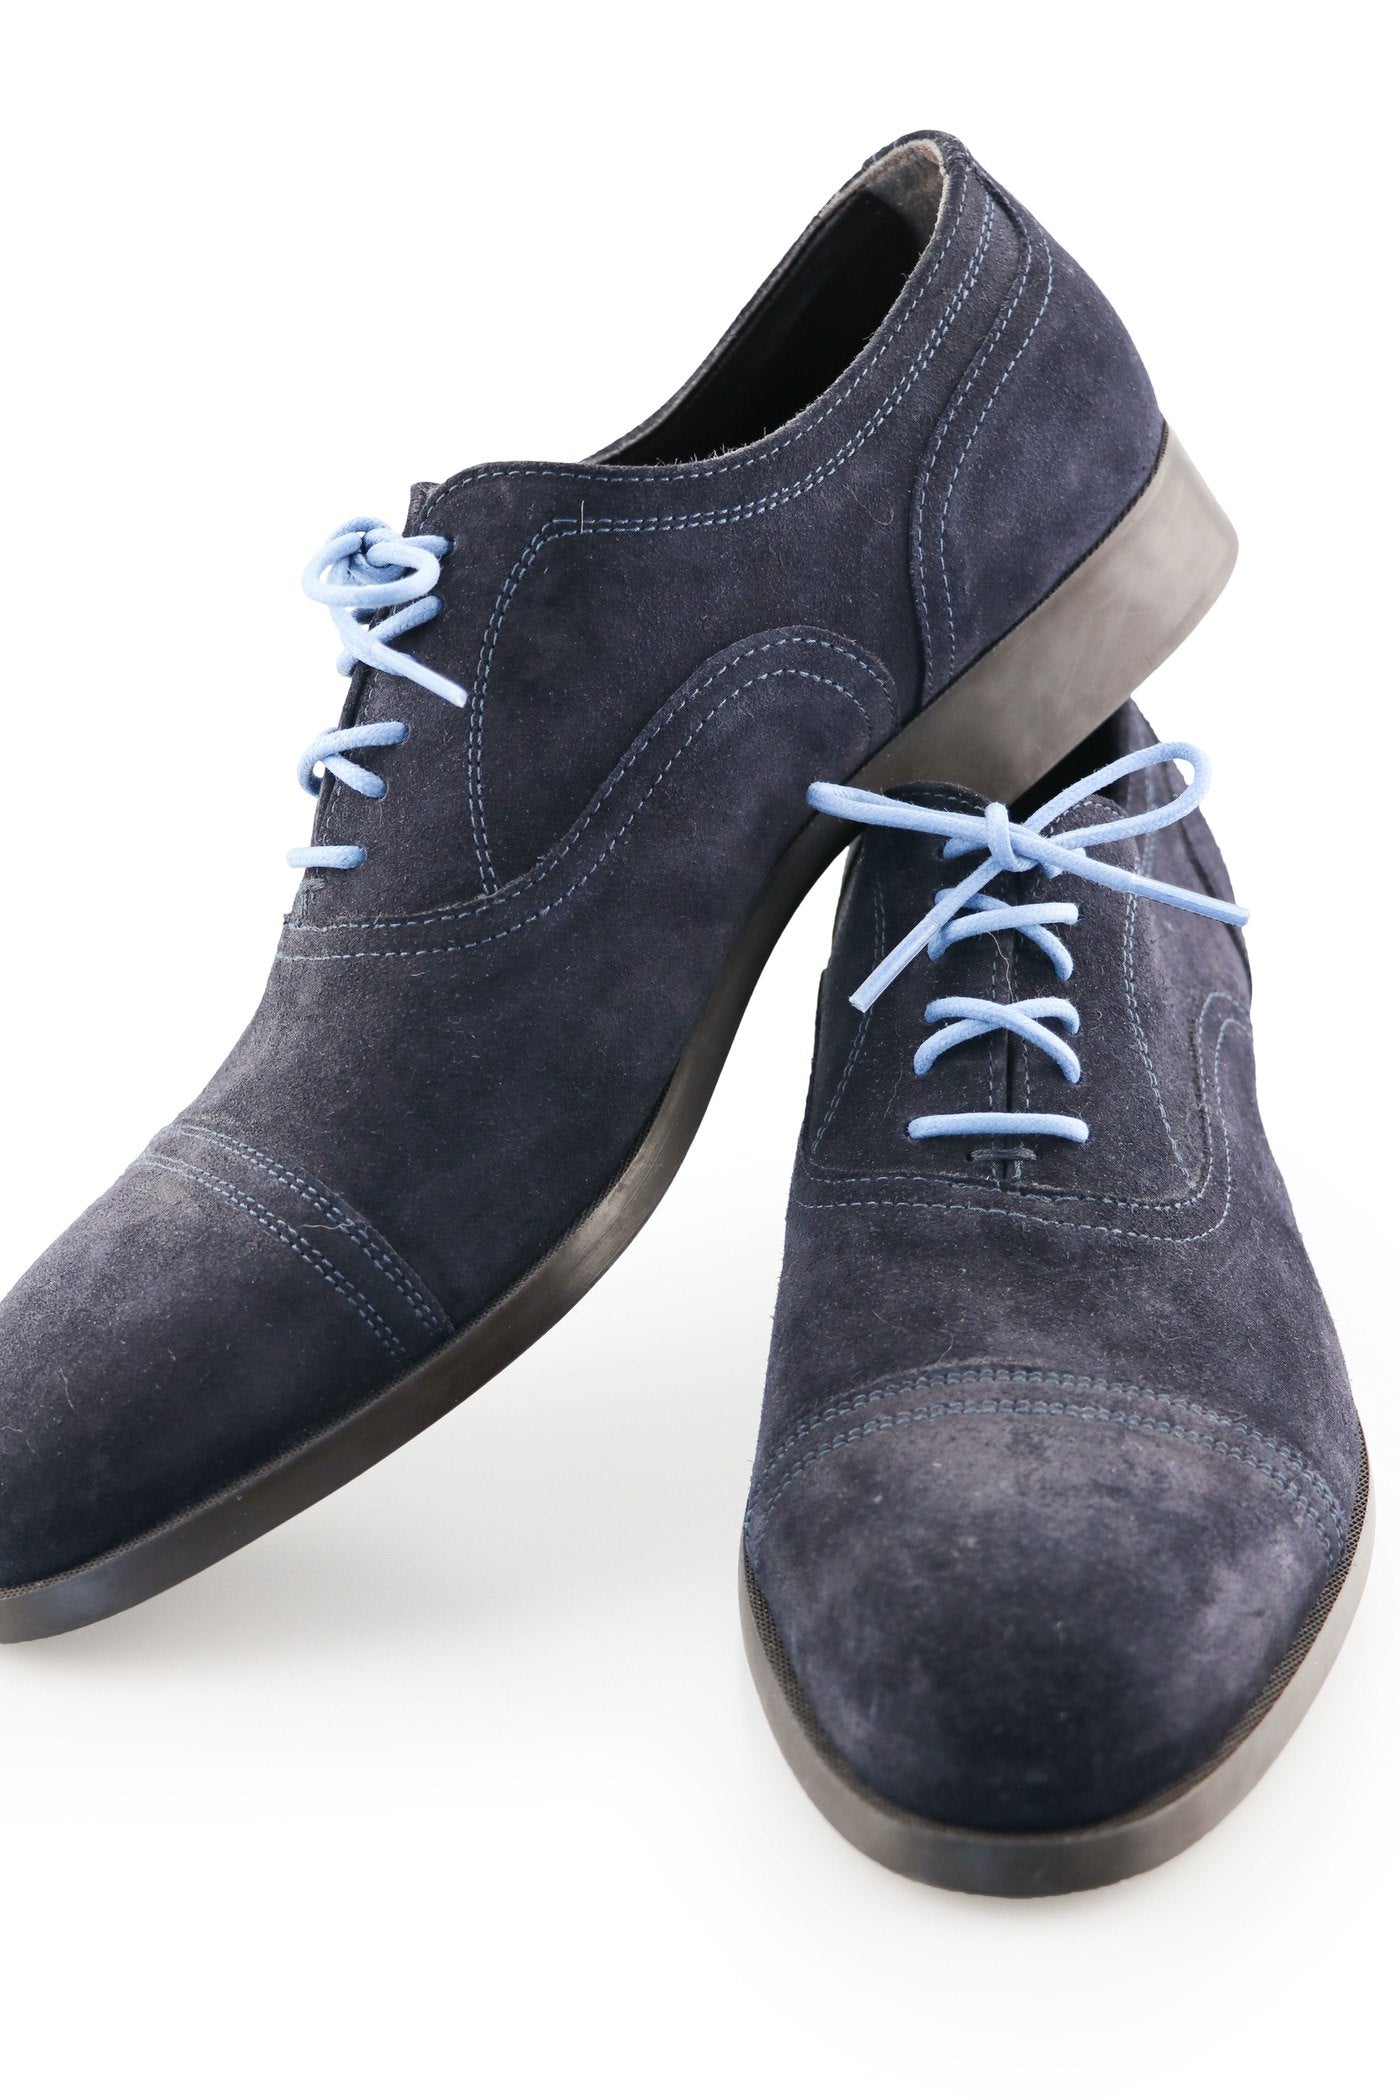 Blue Shoe Laces - Ocean Blue Shoelaces – Ted and Lemon